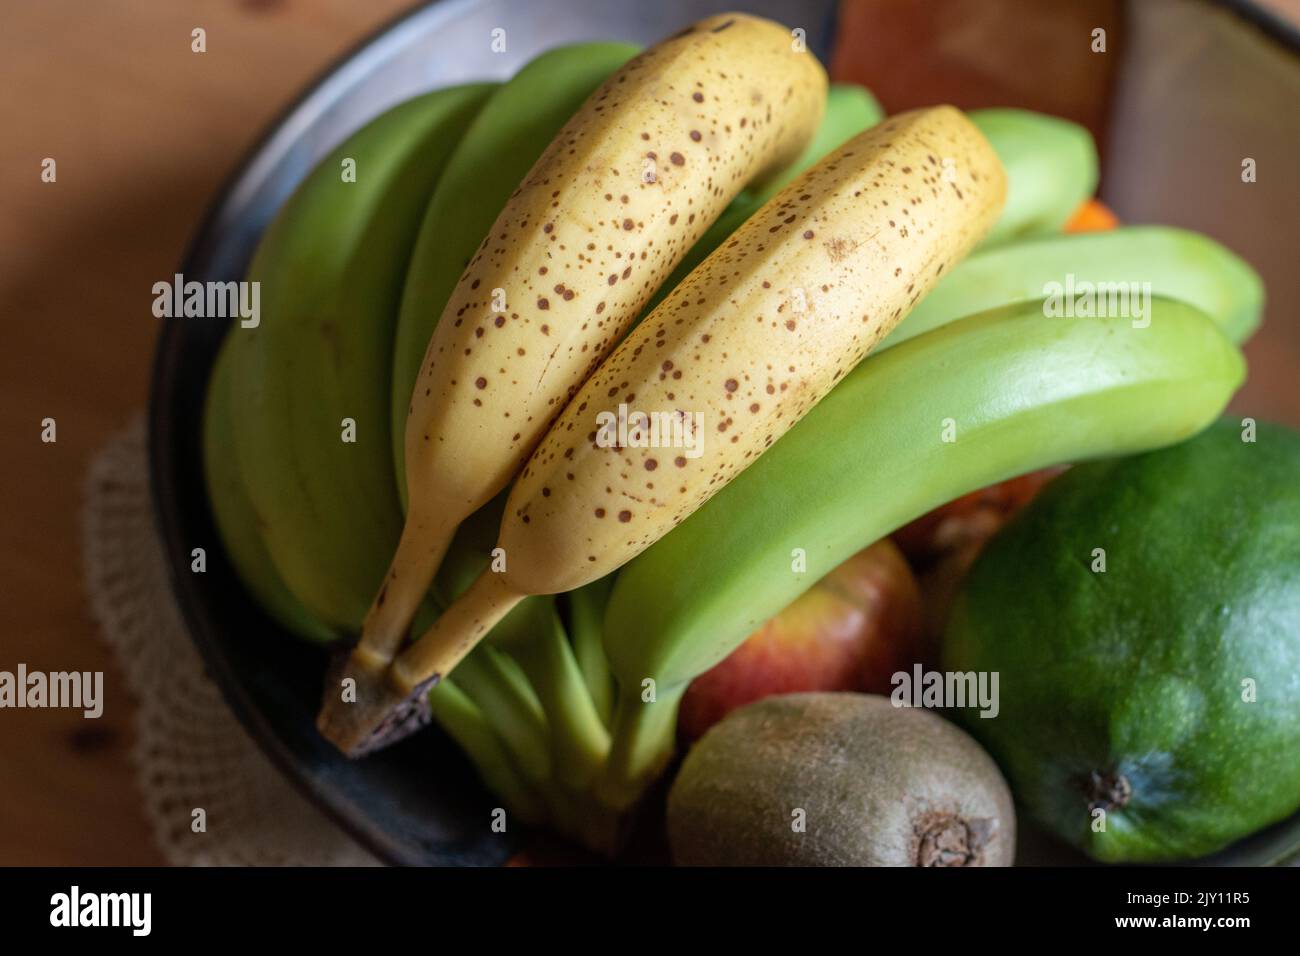 Banane macchiate di colore giallo maturo accanto alle banane verdi in un recipiente per la frutta per favorire la maturazione Foto Stock